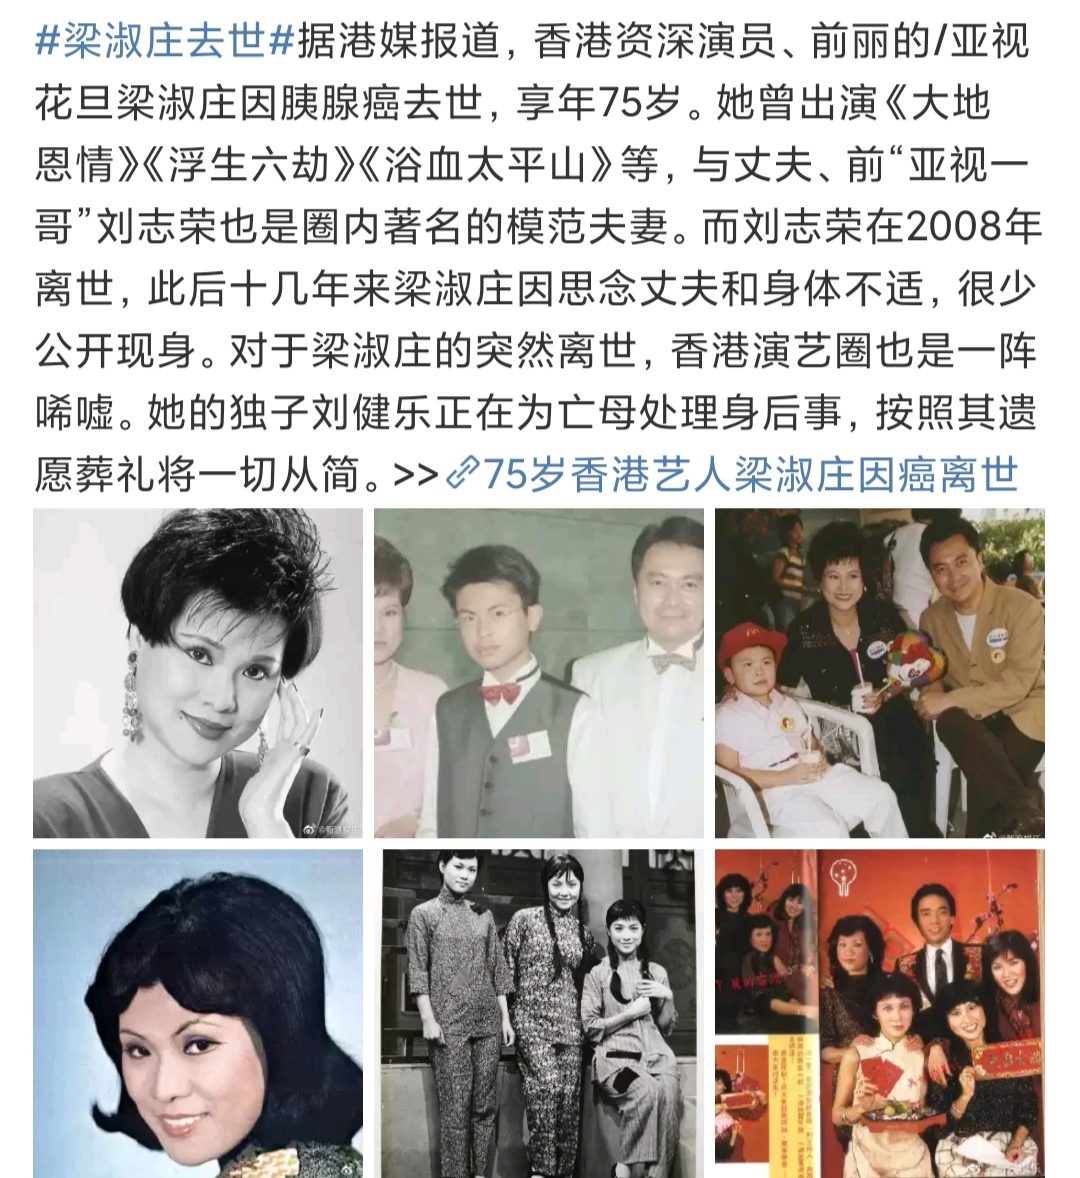 痛心,又有一位香港资深演员不幸去世